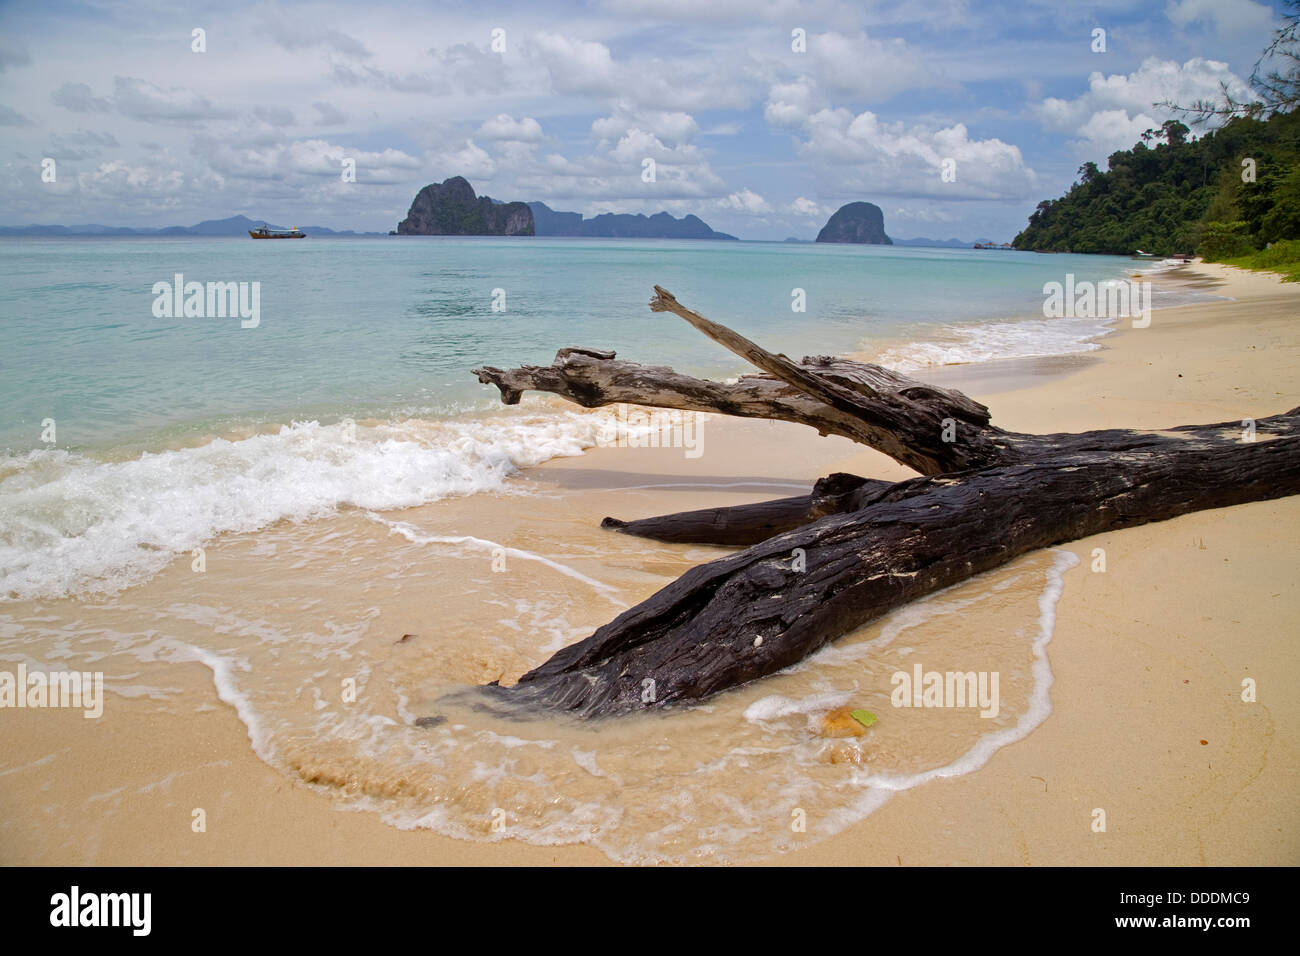 Tropical Beach in Thailand Island Stock Photo